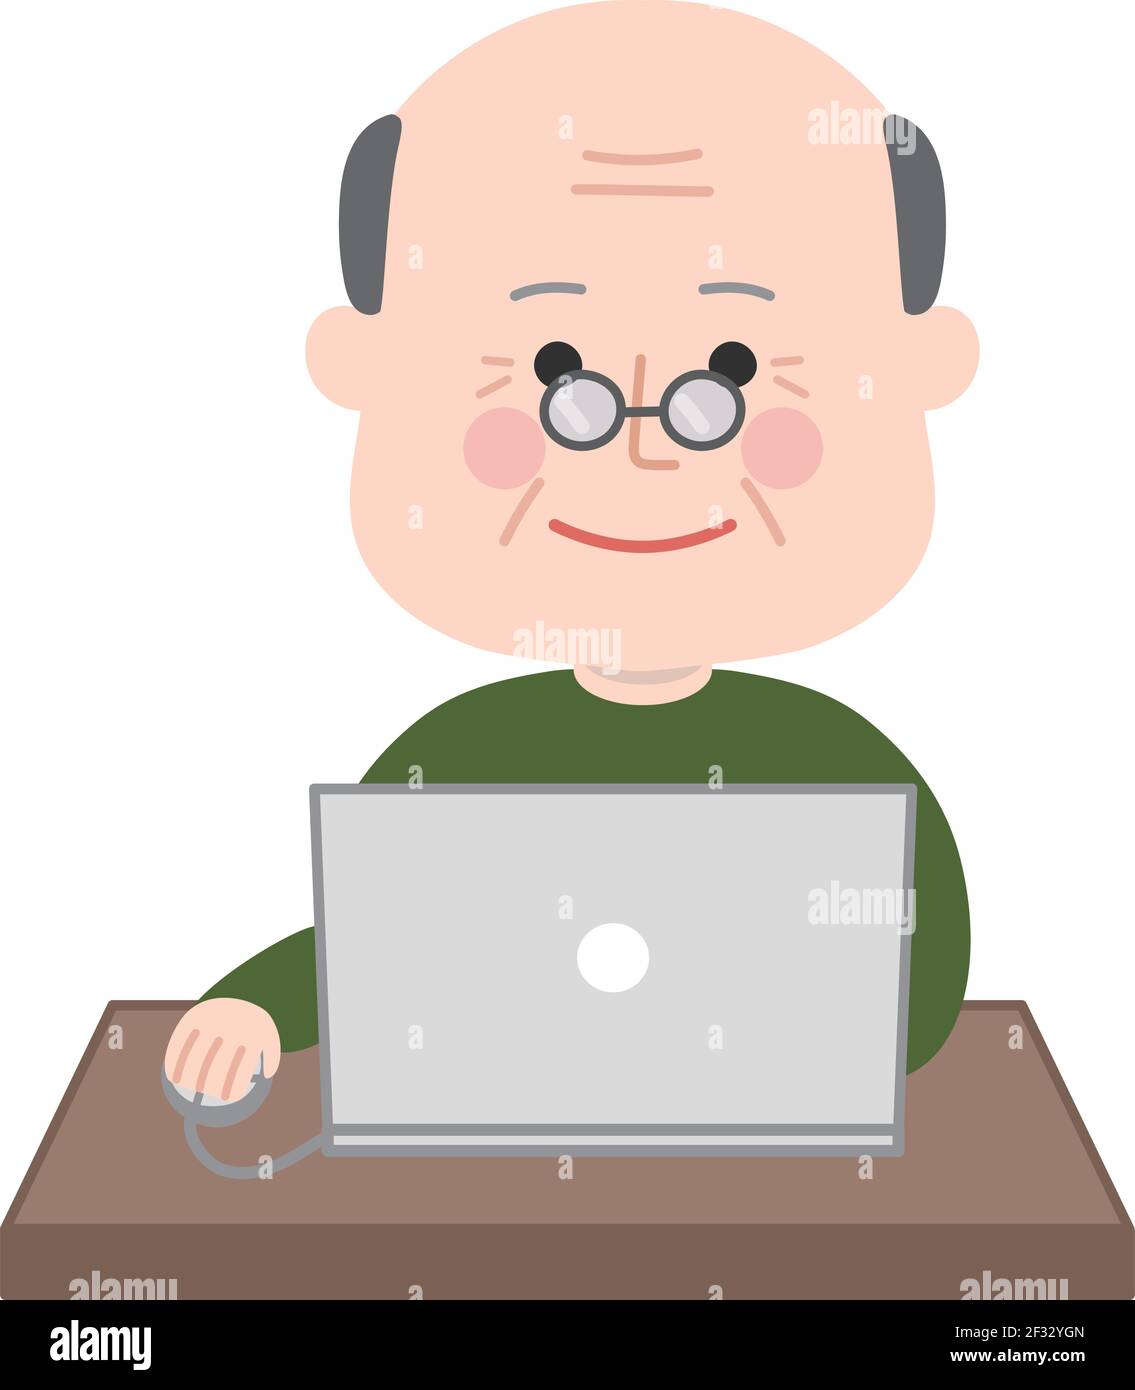 Älterer Mann, der einen Laptop benutzt. Vektorgrafik isoliert auf weißem Hintergrund. Stock Vektor